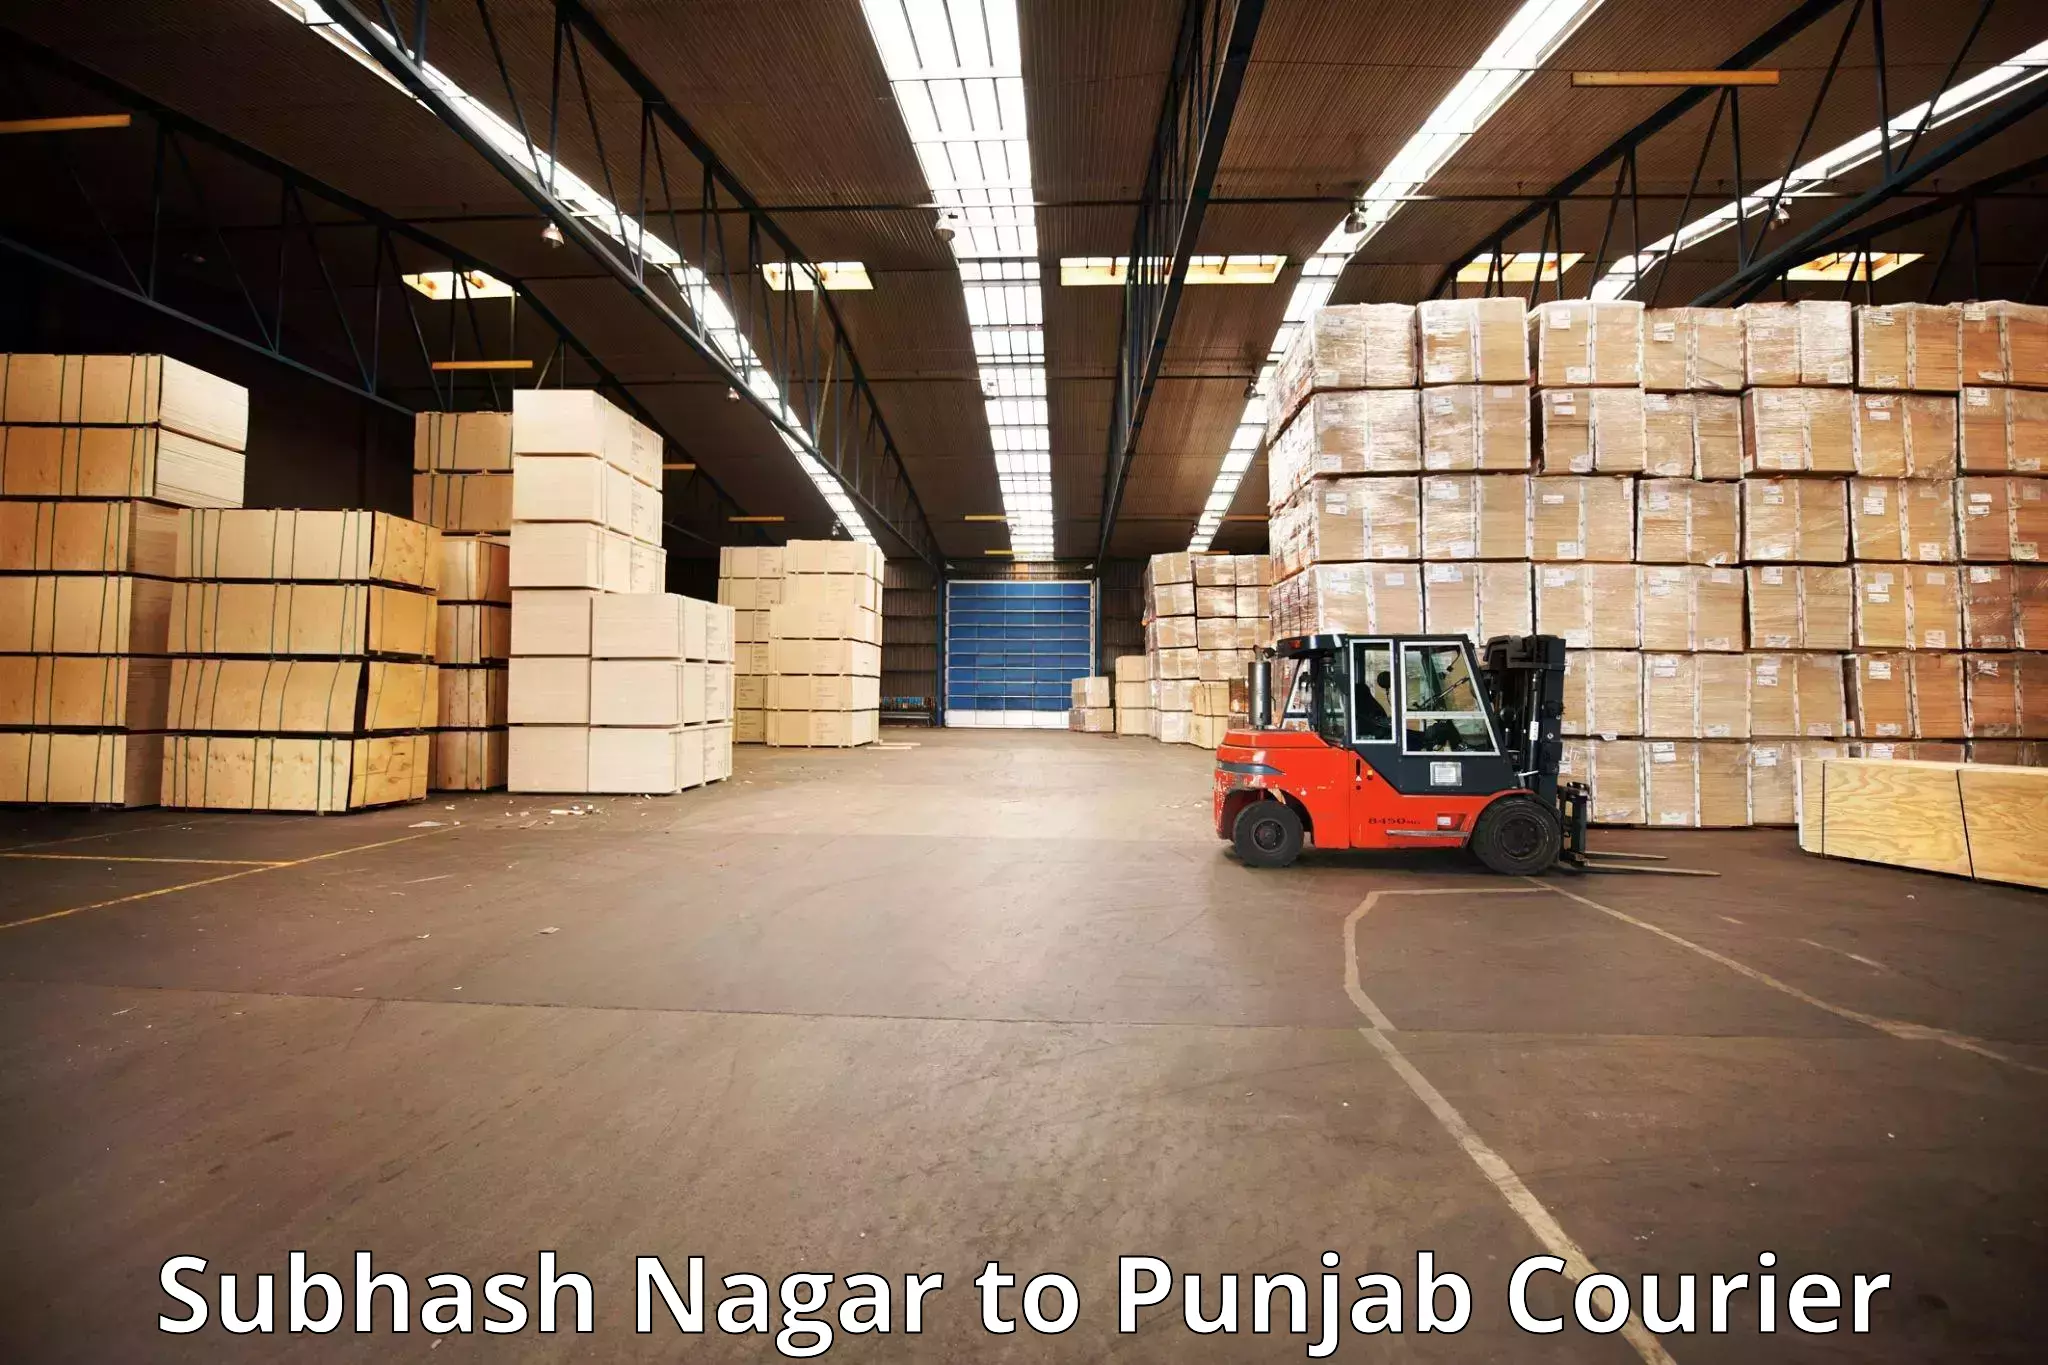 Baggage transport quote Subhash Nagar to Punjab